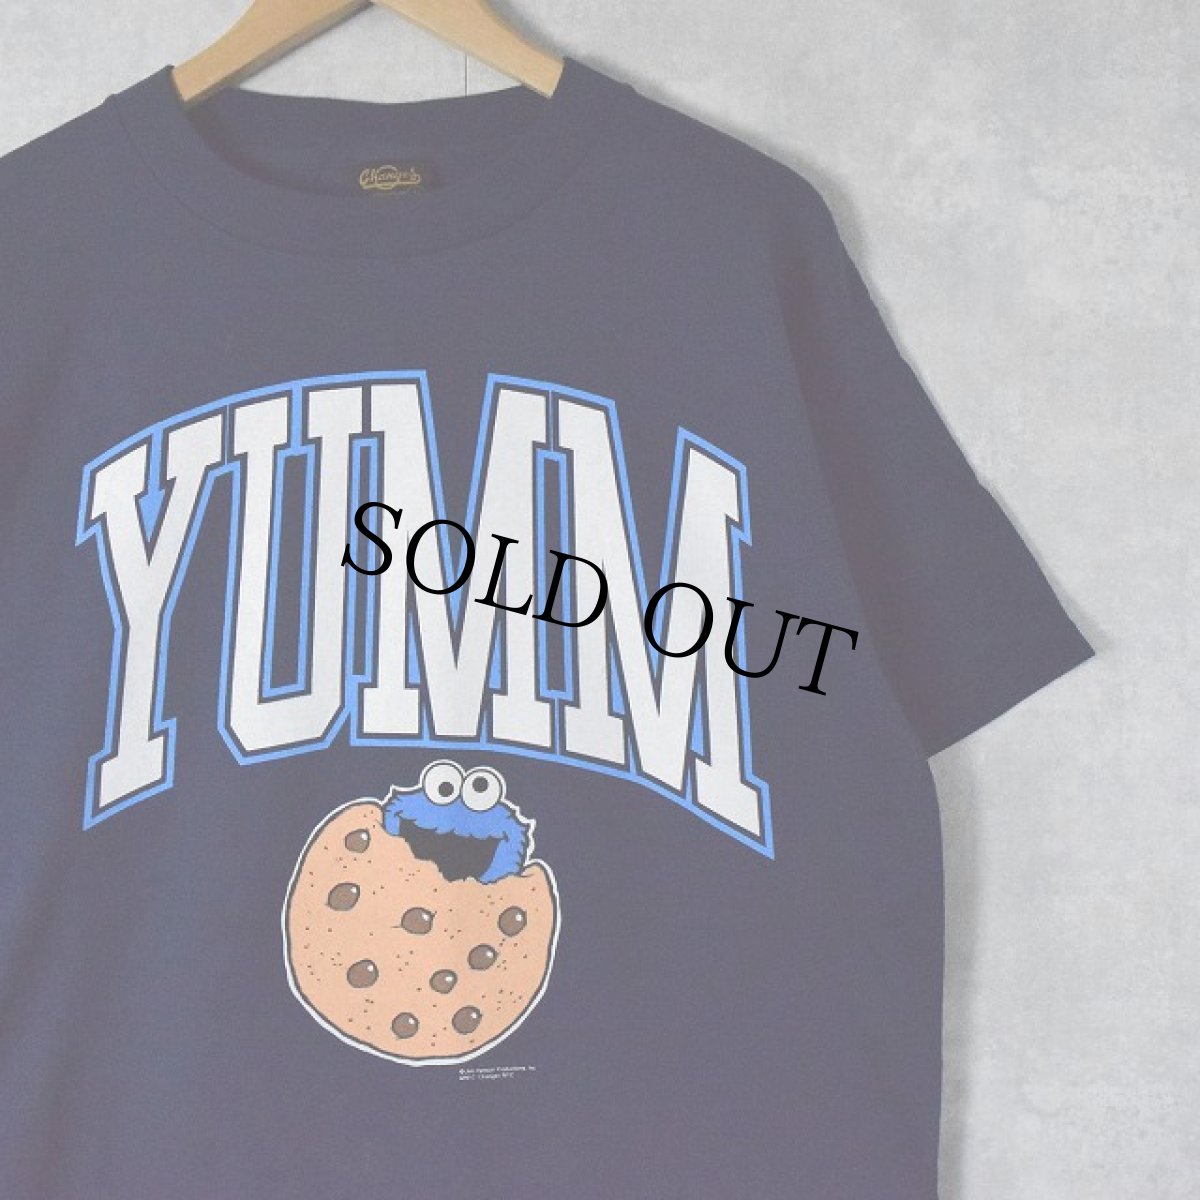 画像1: 90's COOKIE MONSTER USA製 "YUMM" キャラクターTシャツ DEADSTOCK L (1)